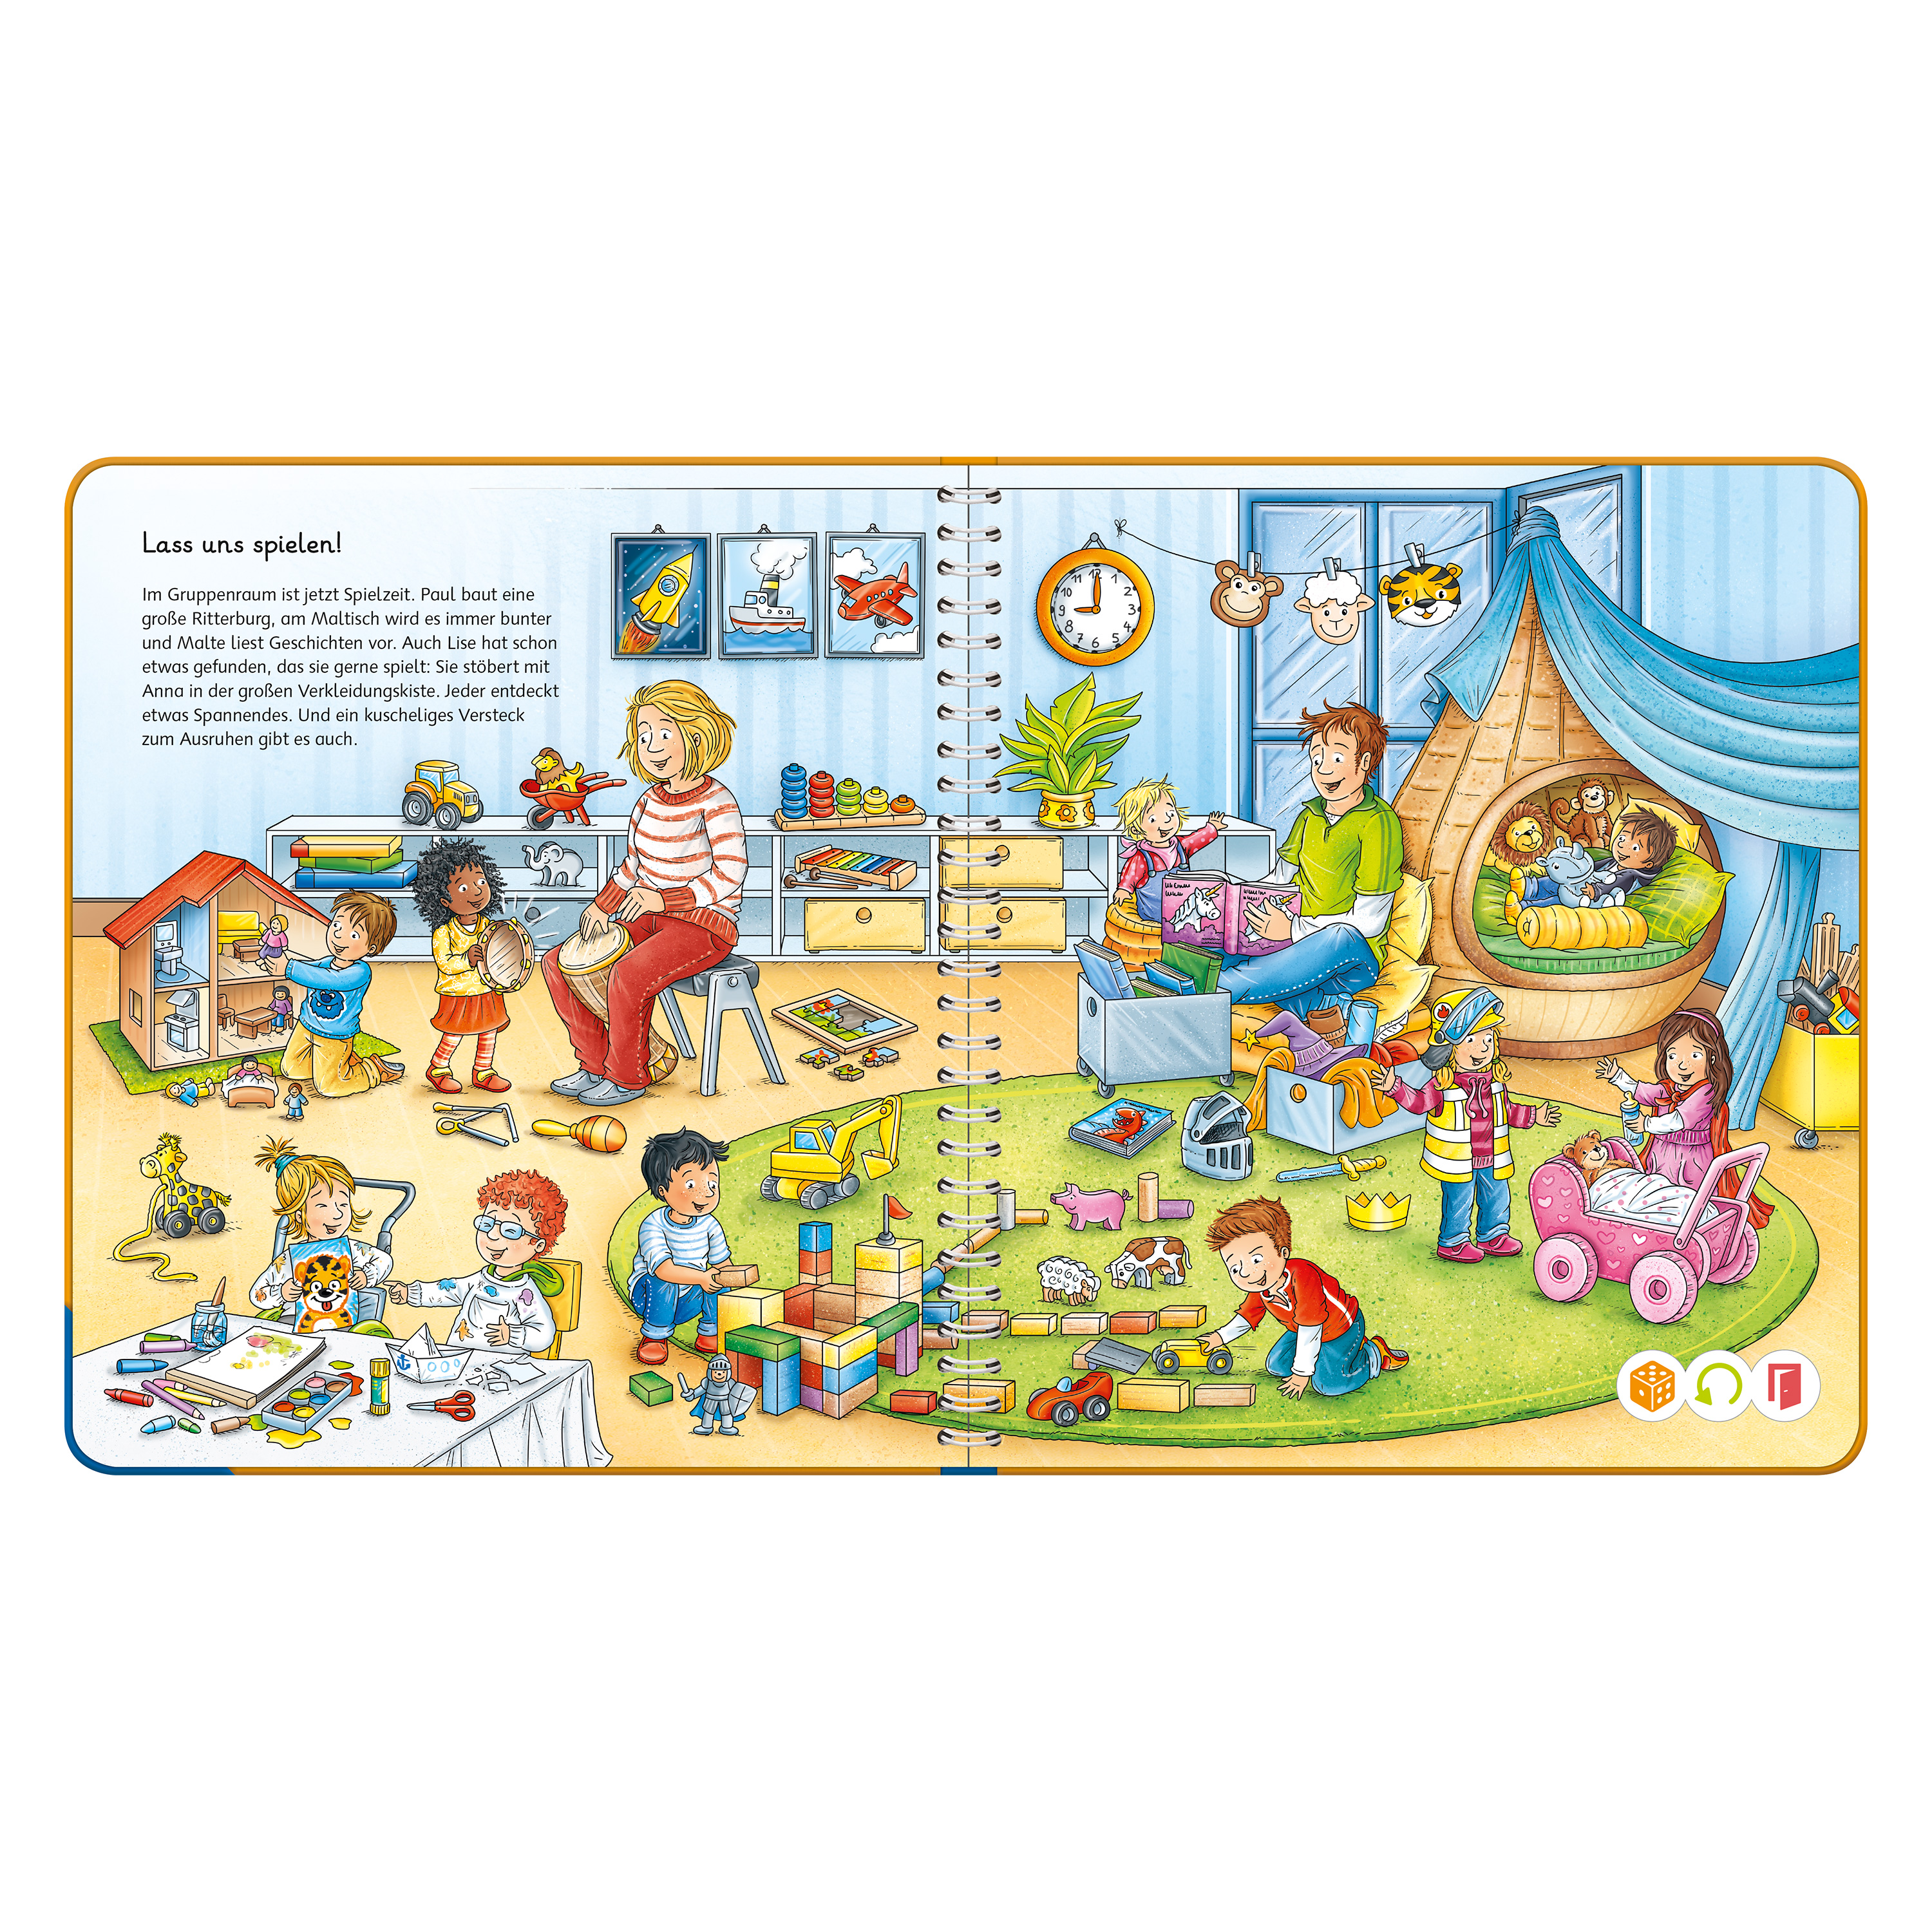 tiptoi® Wörter-Bilderbuch 'Kindergarten'